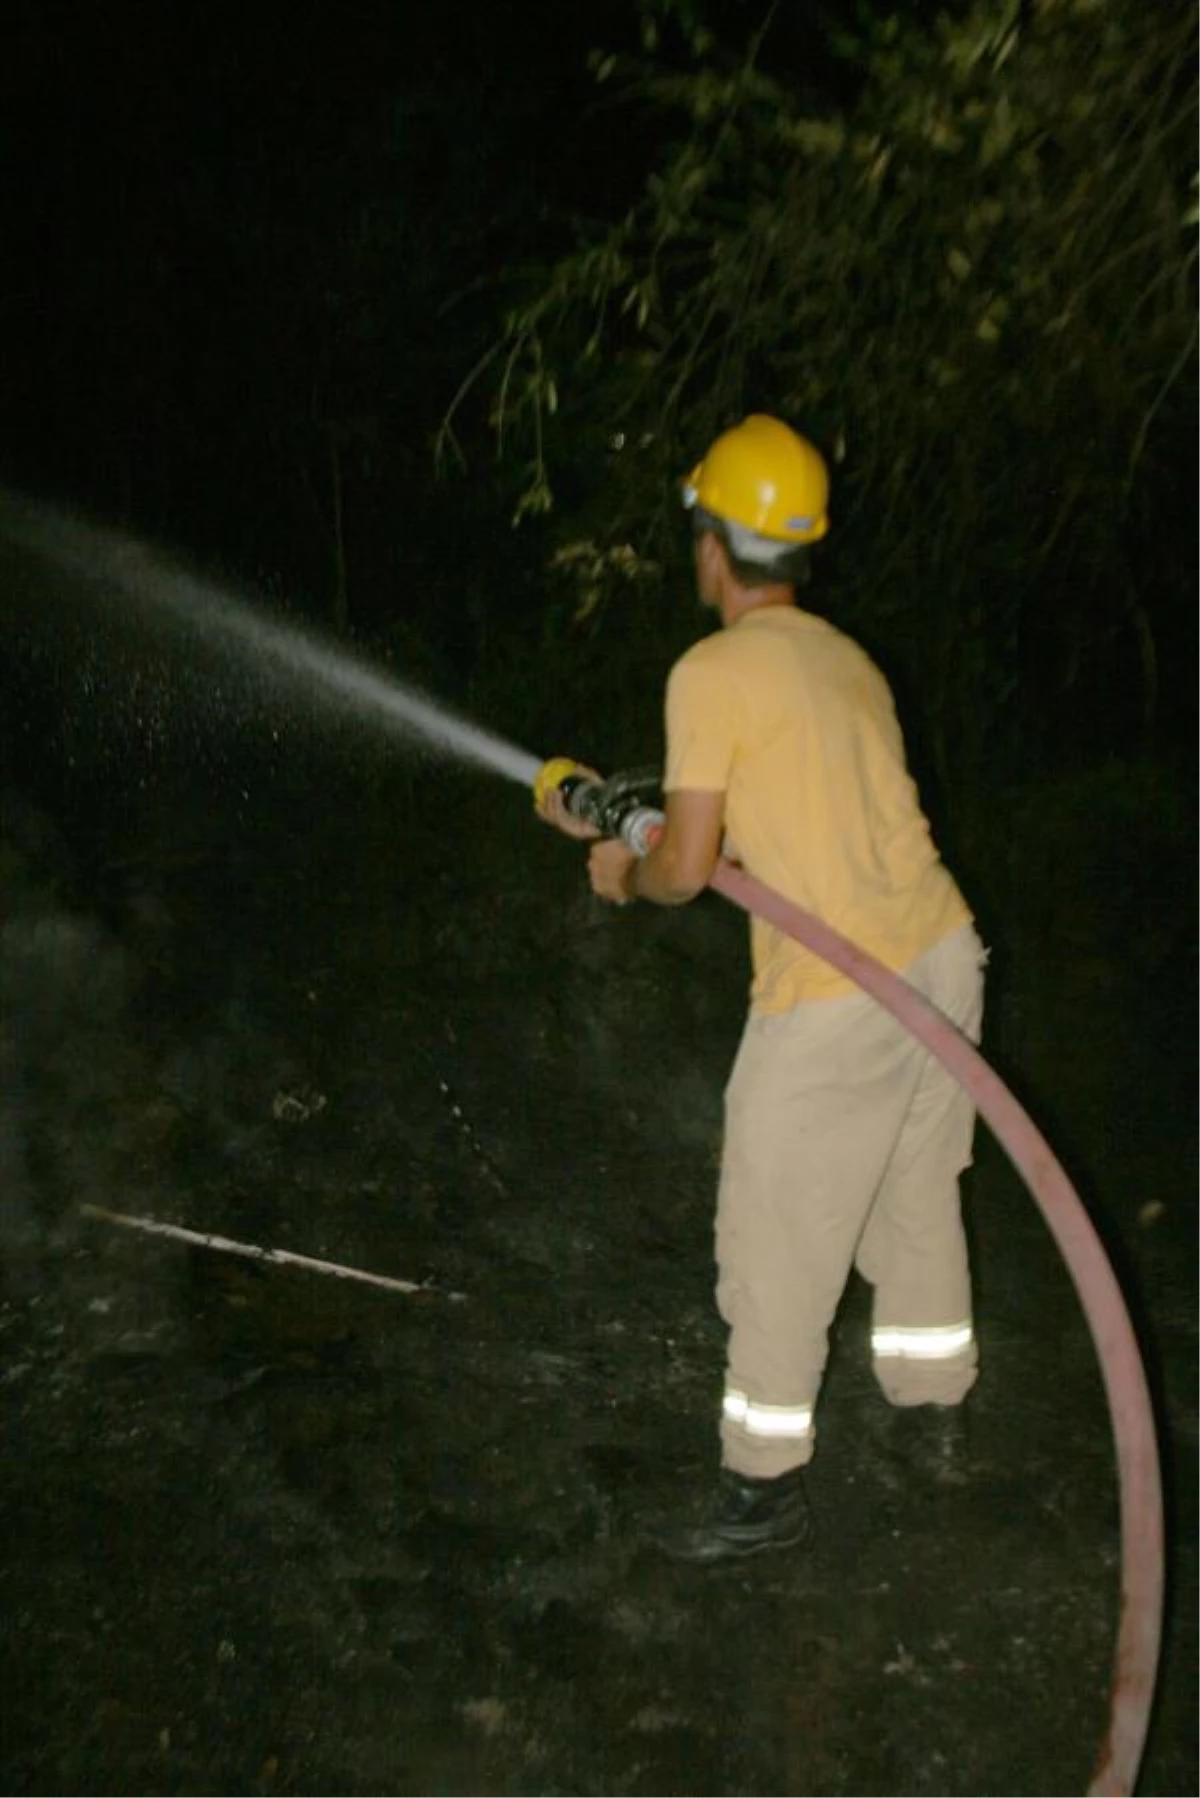 Oteller Bölgesinde Çıkan Yangın Korkuttu